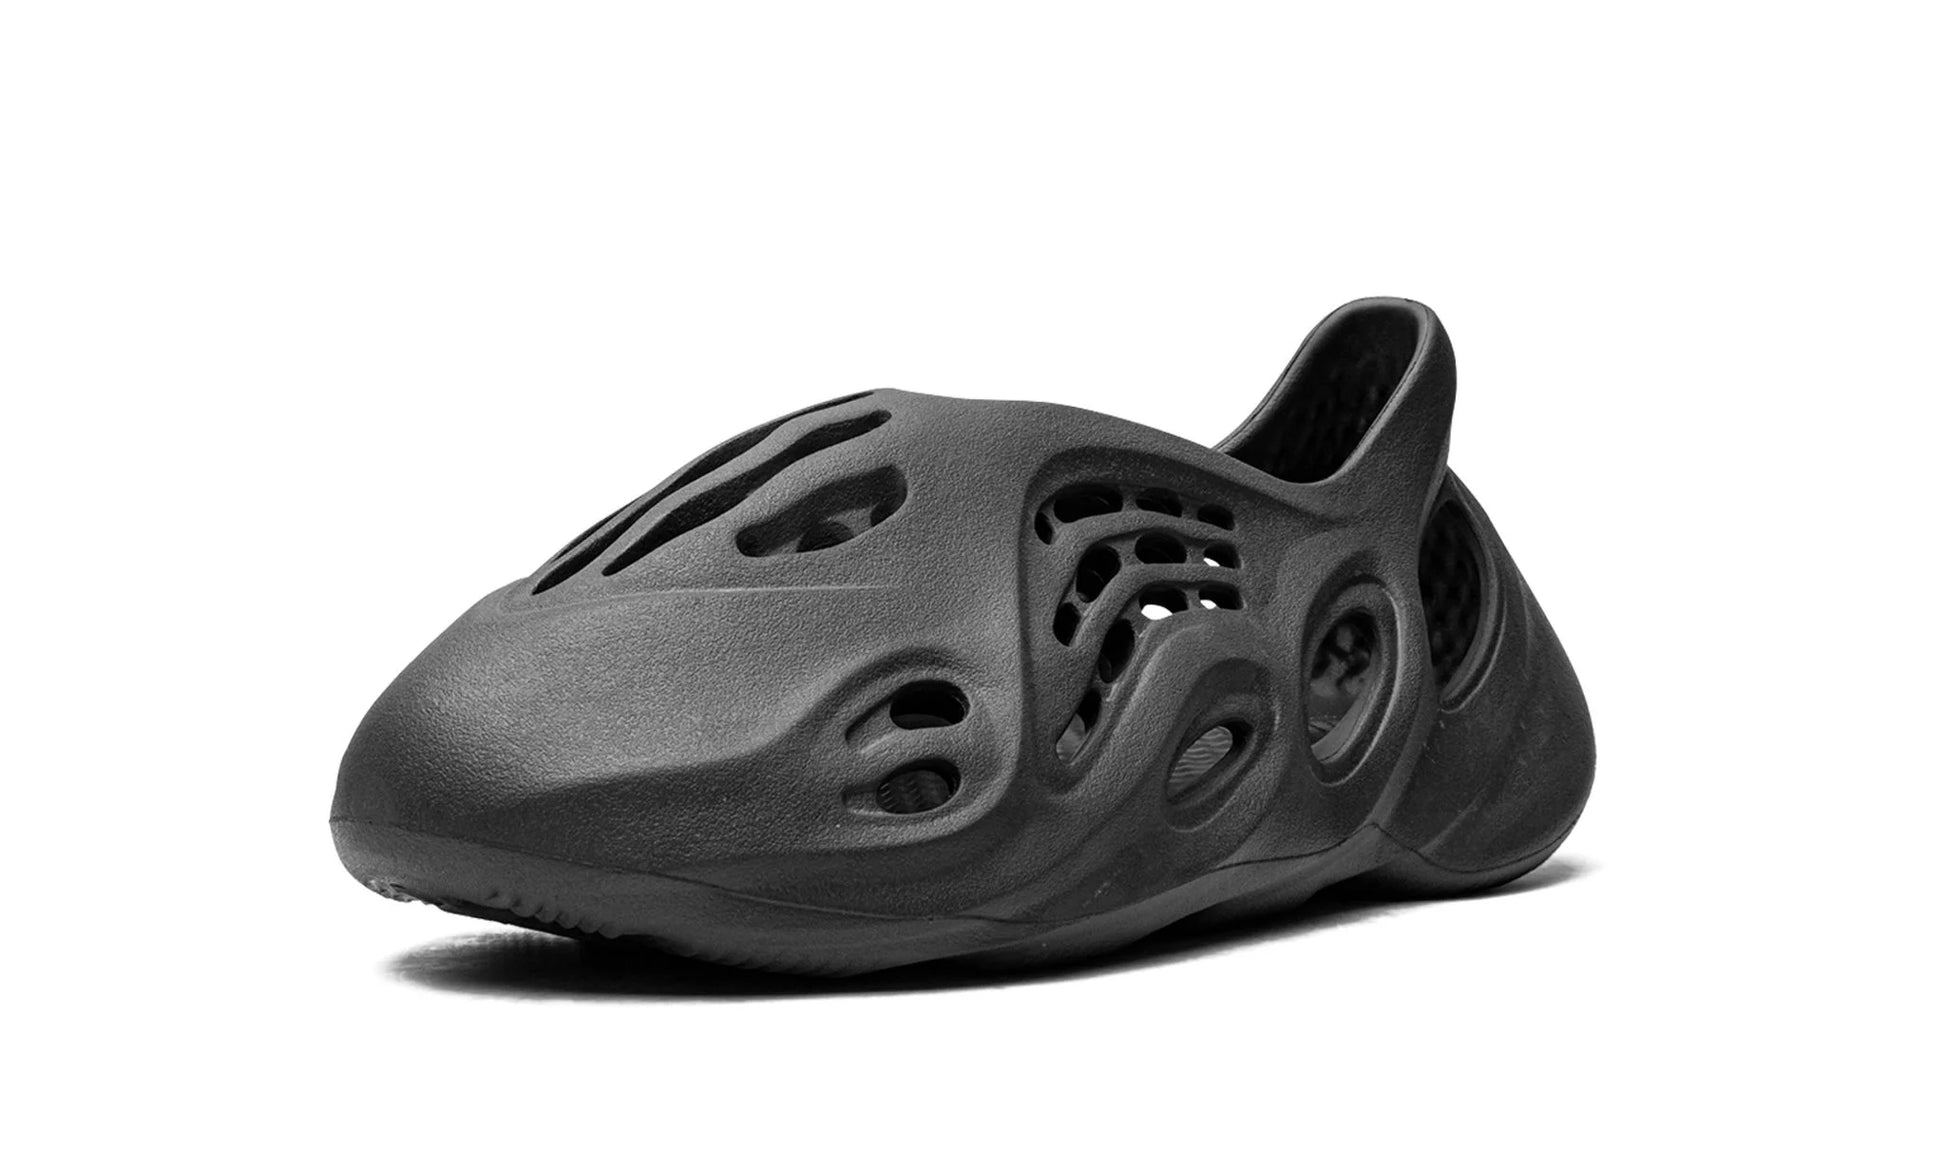 Yeezy Foam Runner Onyx Single Shoe Front View